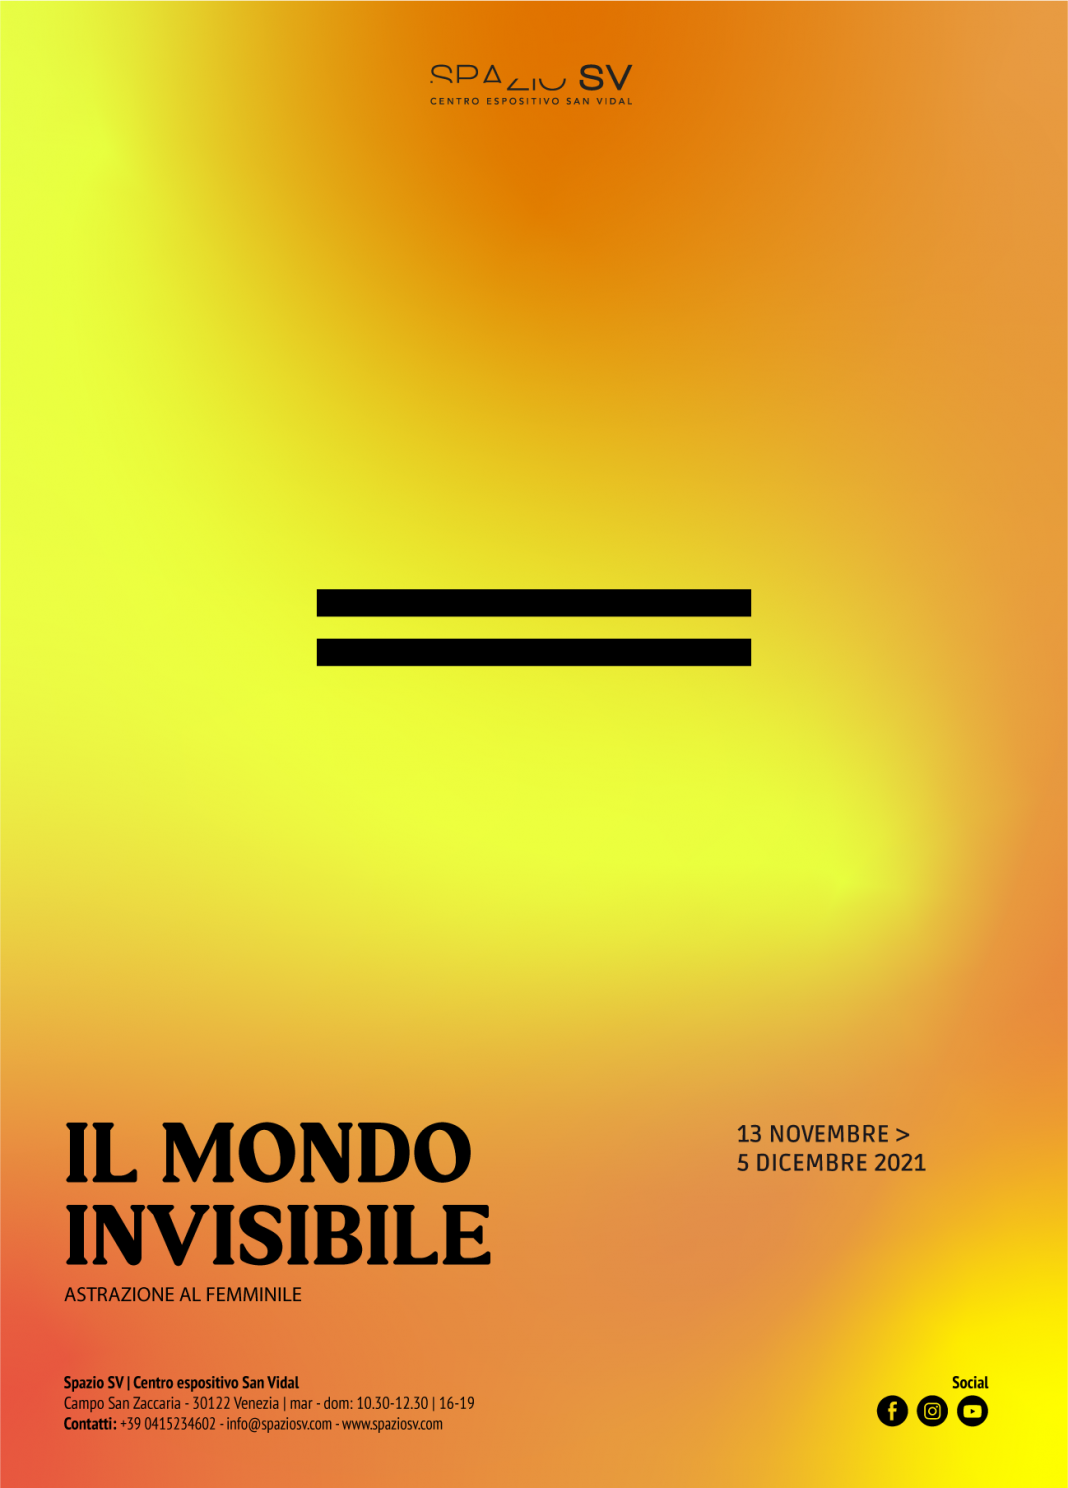 Il mondo invisibilehttps://www.exibart.com/repository/media/formidable/11/img/01a/manifesto-mondo-invisibile-1068x1488.png